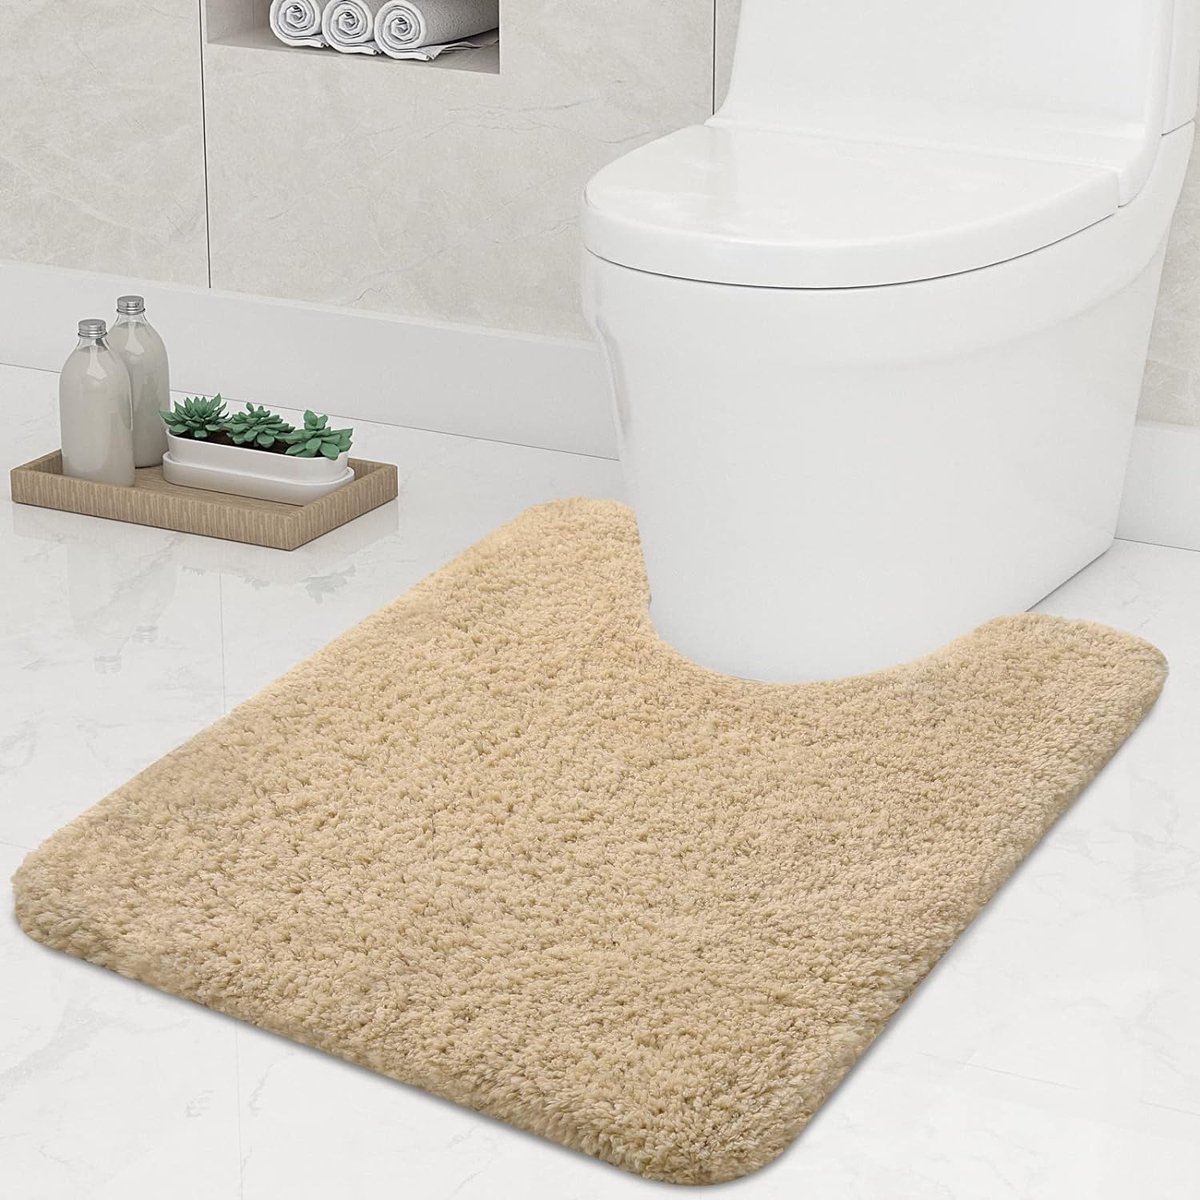 Antislip zachte mat toilet met uitsparing 51 x 61 cm, absorberende badmat, staande wc, wasbare badmat voor toilet, beige